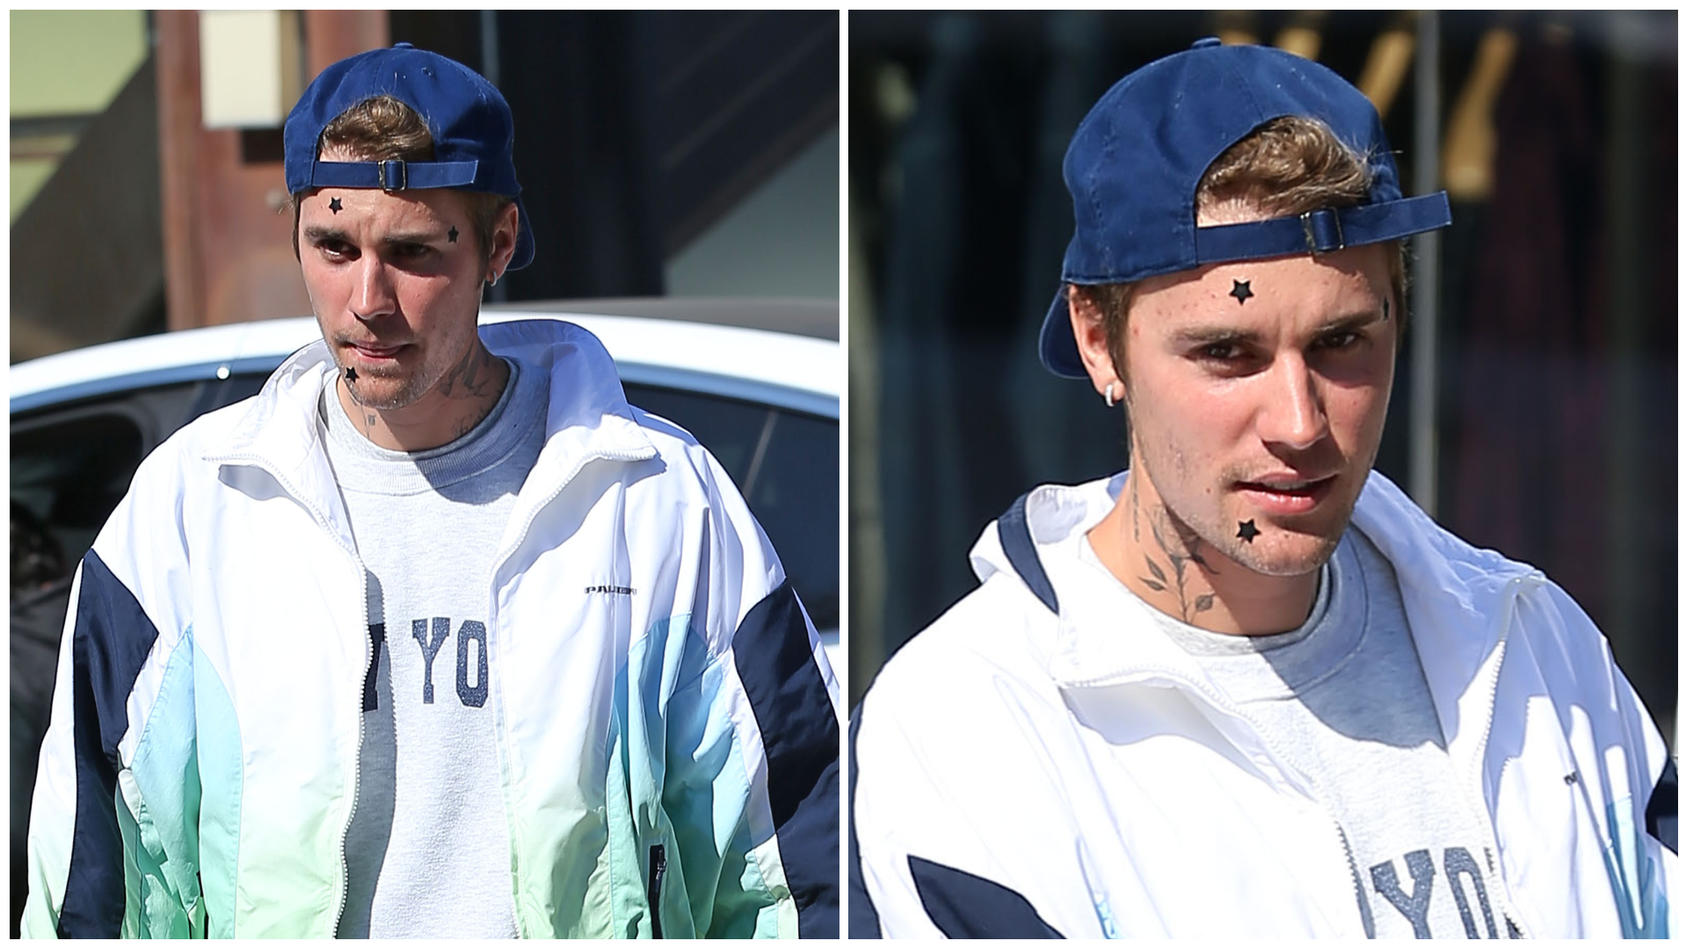 Drei Sterne im Gesicht: Setzt Justin Bieber hier einen neuen Trend?